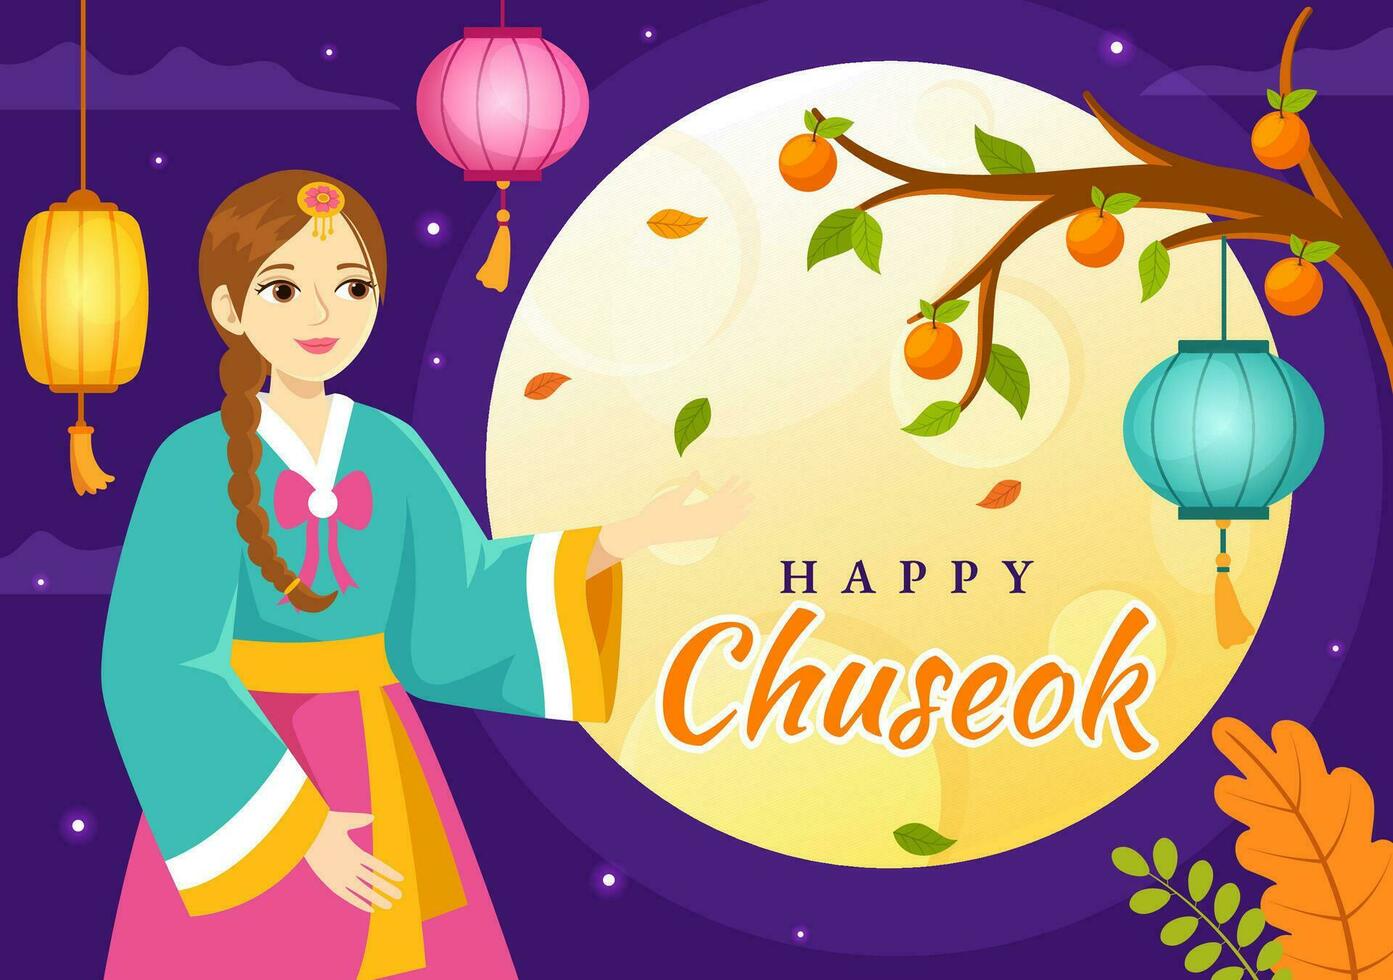 contento Chuseok giorno vettore illustrazione di coreano ringraziamento evento con raccogliere Festival celebrare su autunno notte sfondo mano disegnato modelli